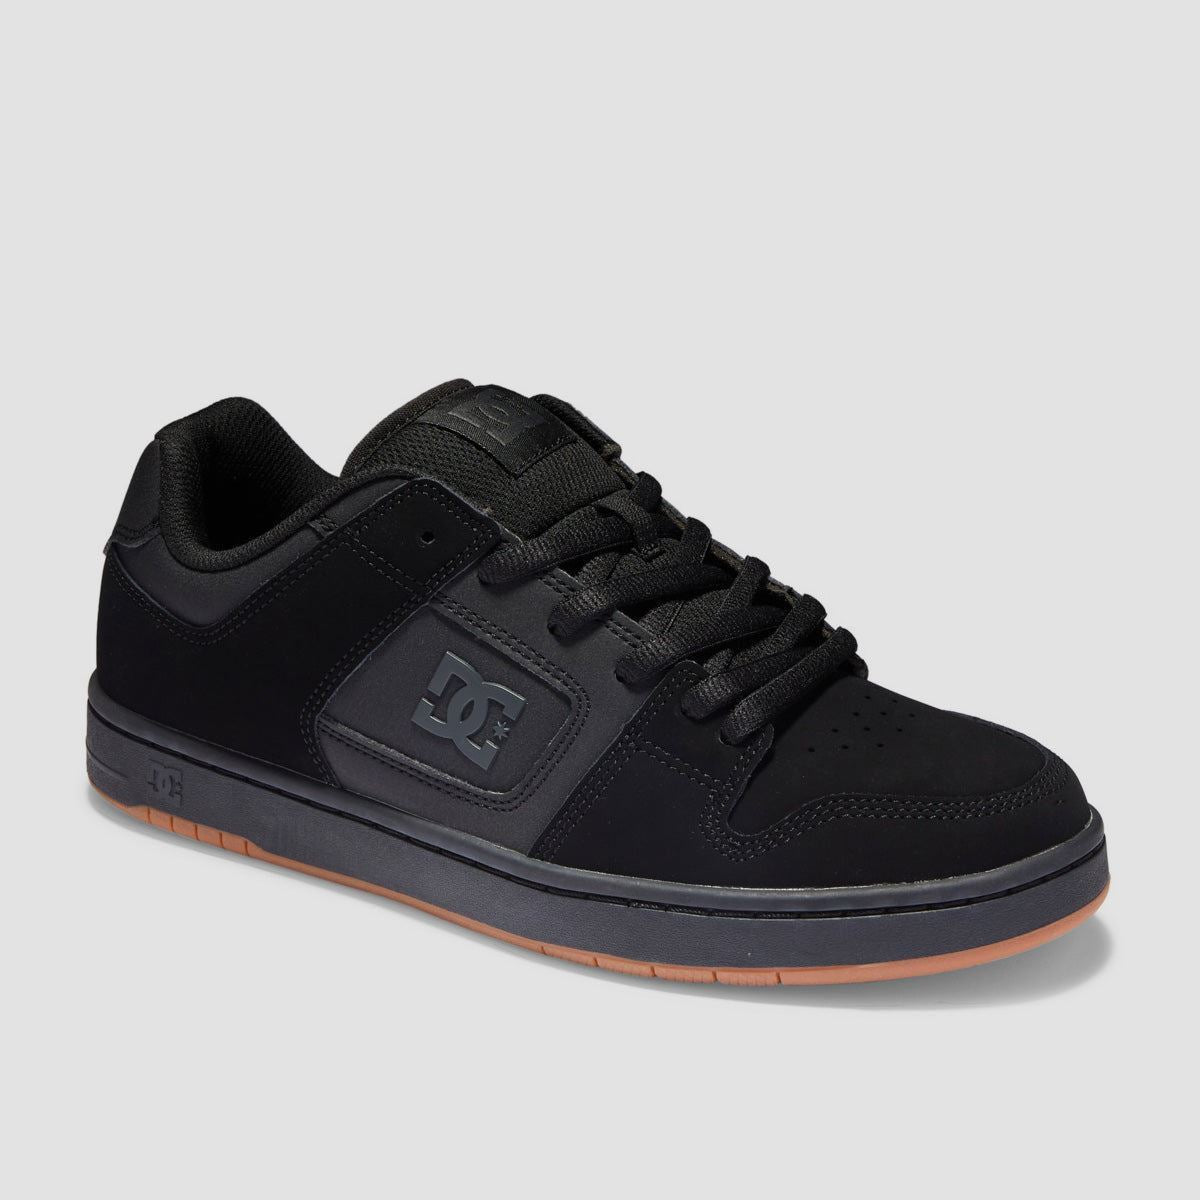 DC Manteca 4 Shoes - Black/Black/Gum